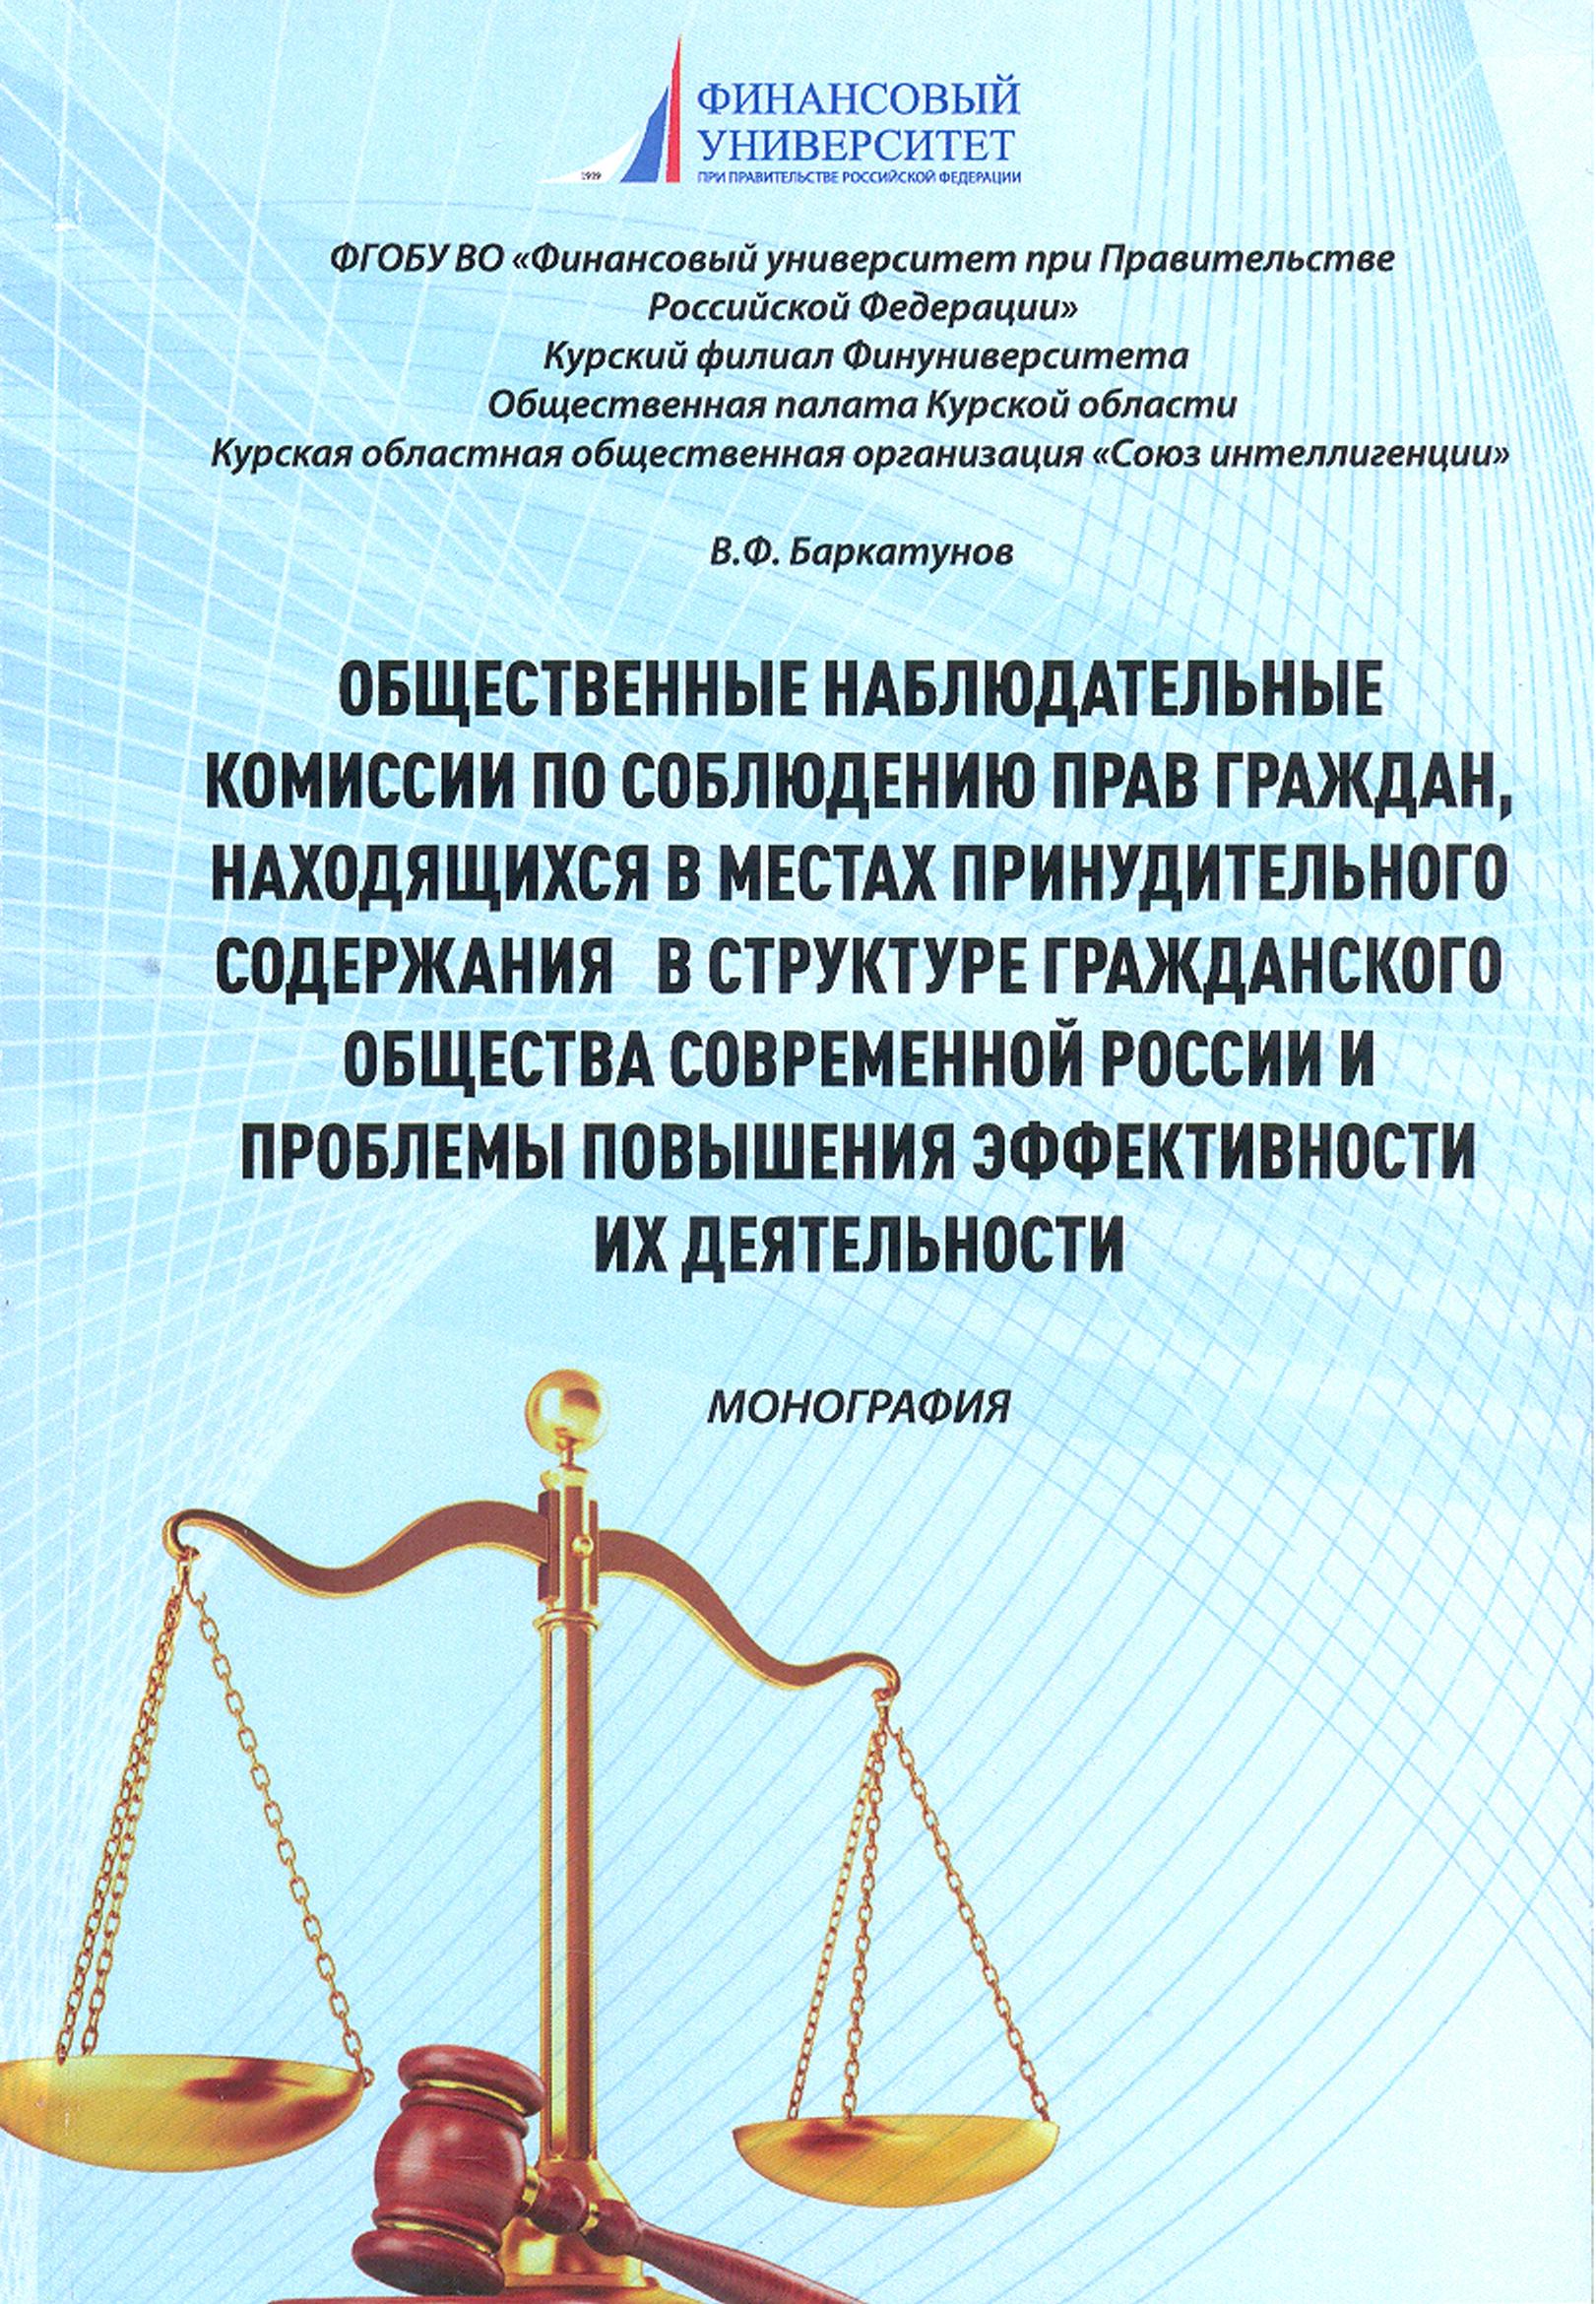 Монография Баркатунова Общественные наблюдательные комиссии 2018.jpg